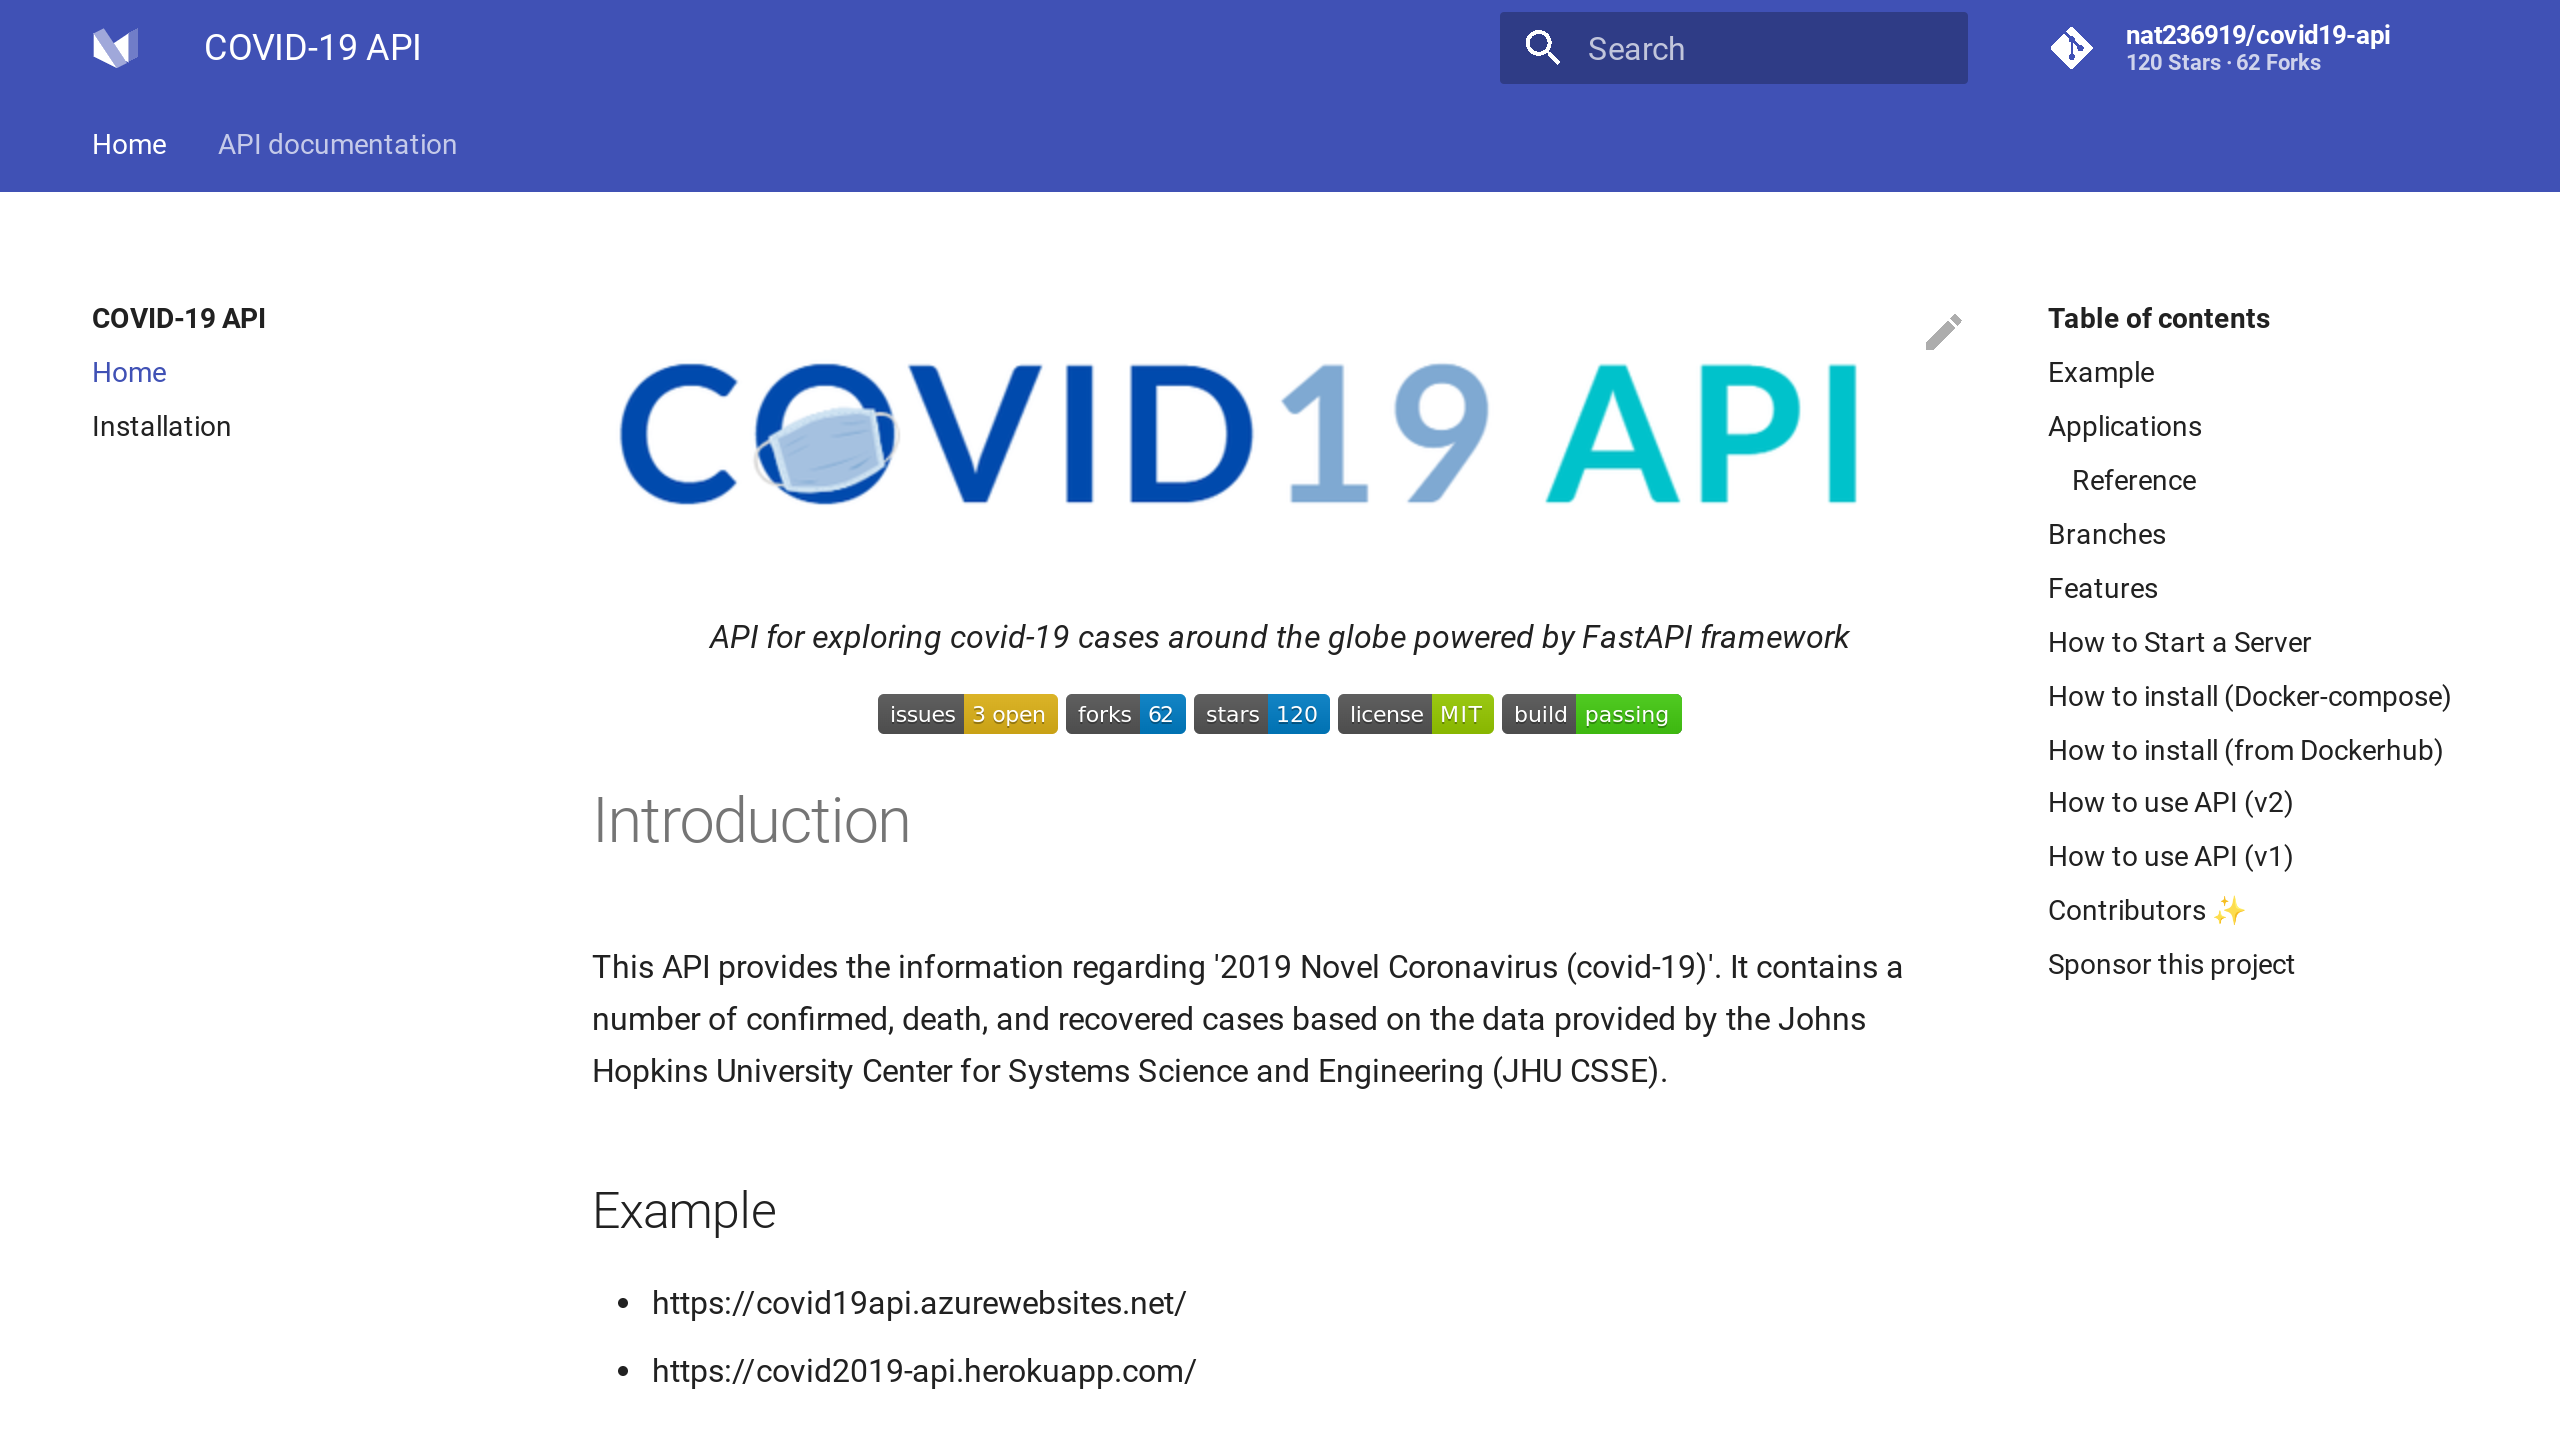 Covid-19 JHU CSSE's website screenshot